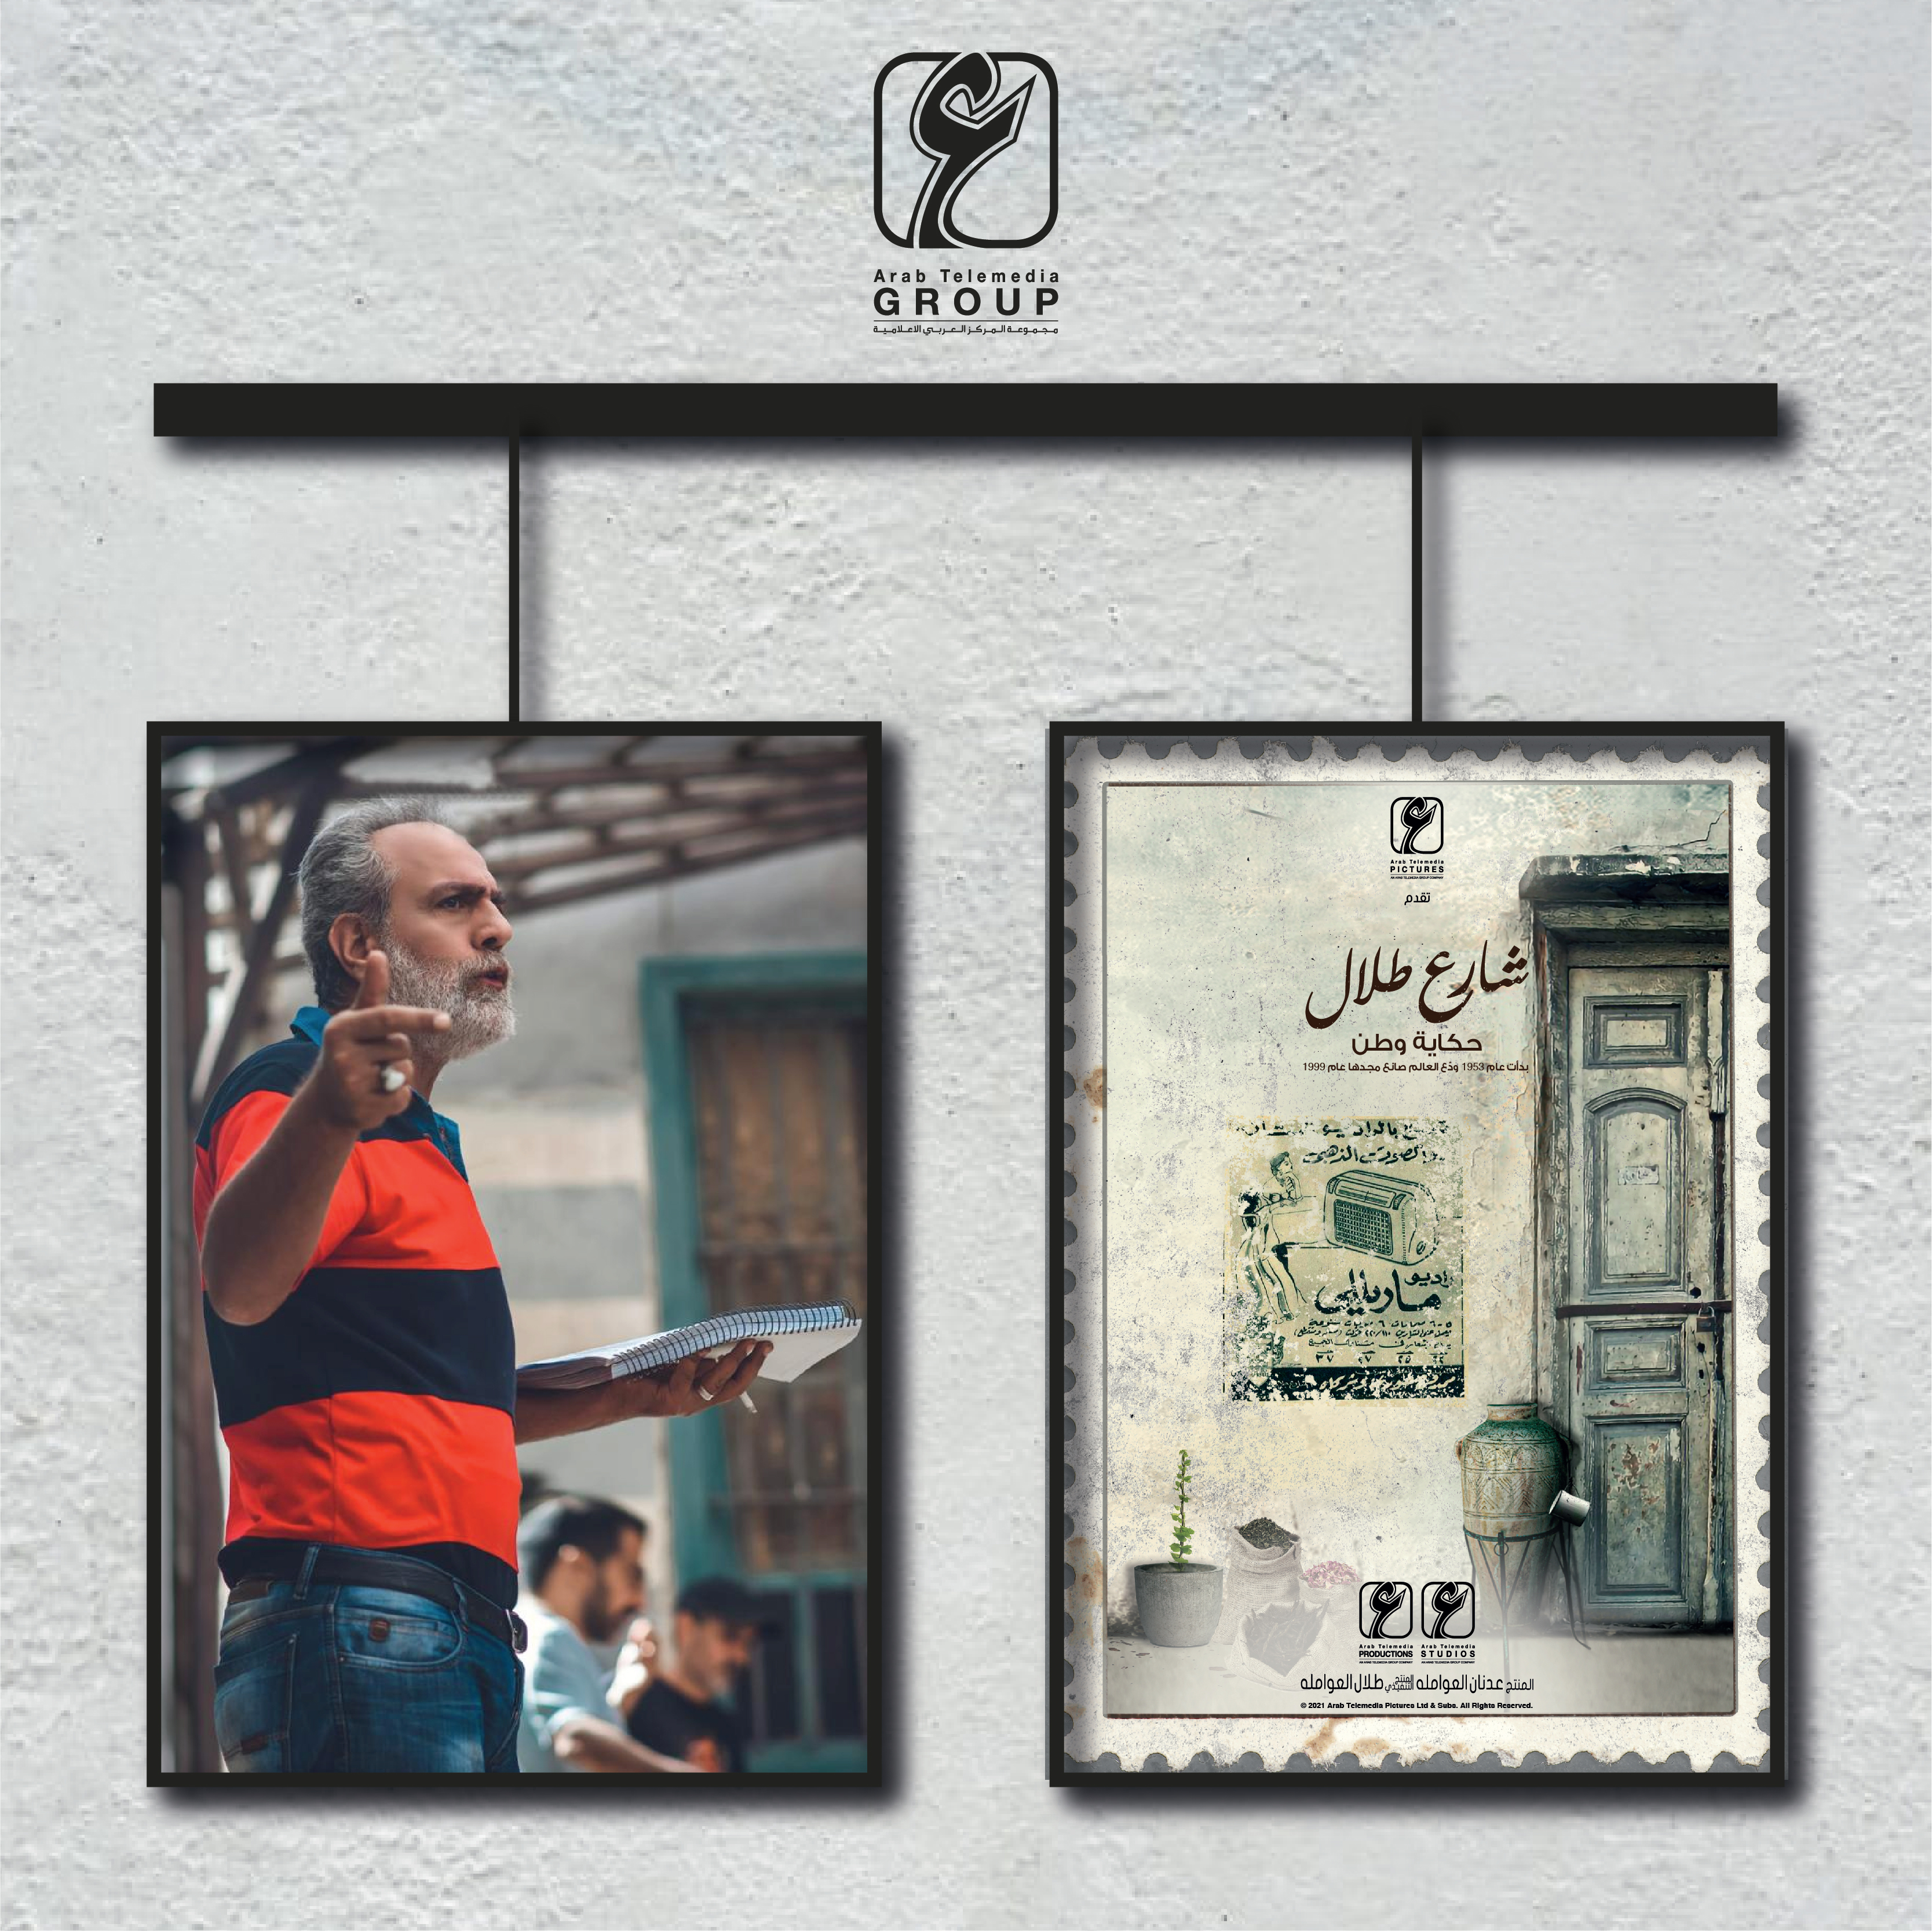  المخرج محمد زهير رجب: مسلسل "شارع طلال" يُقدم أحداث درامية بقالب عربي